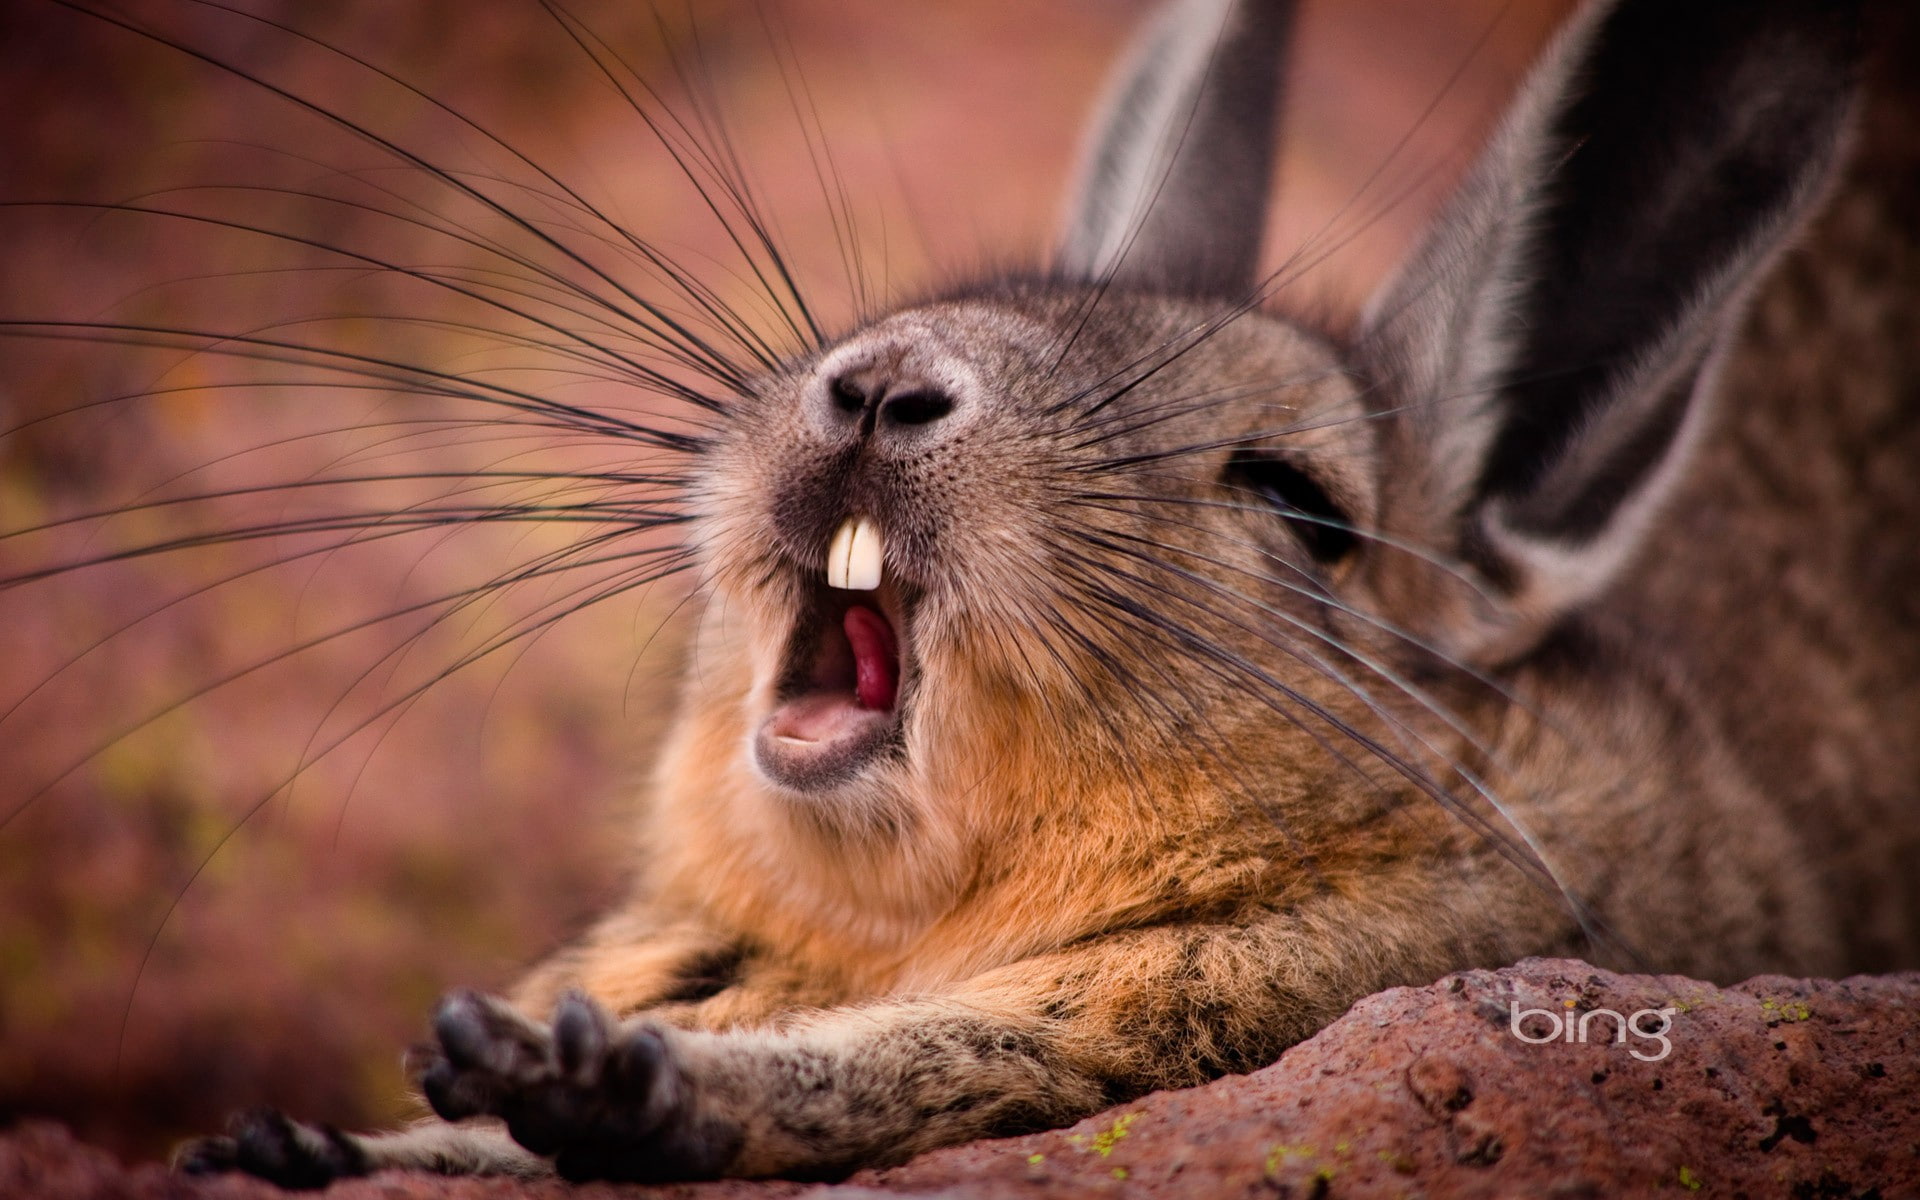 yawning, rabbits, animals